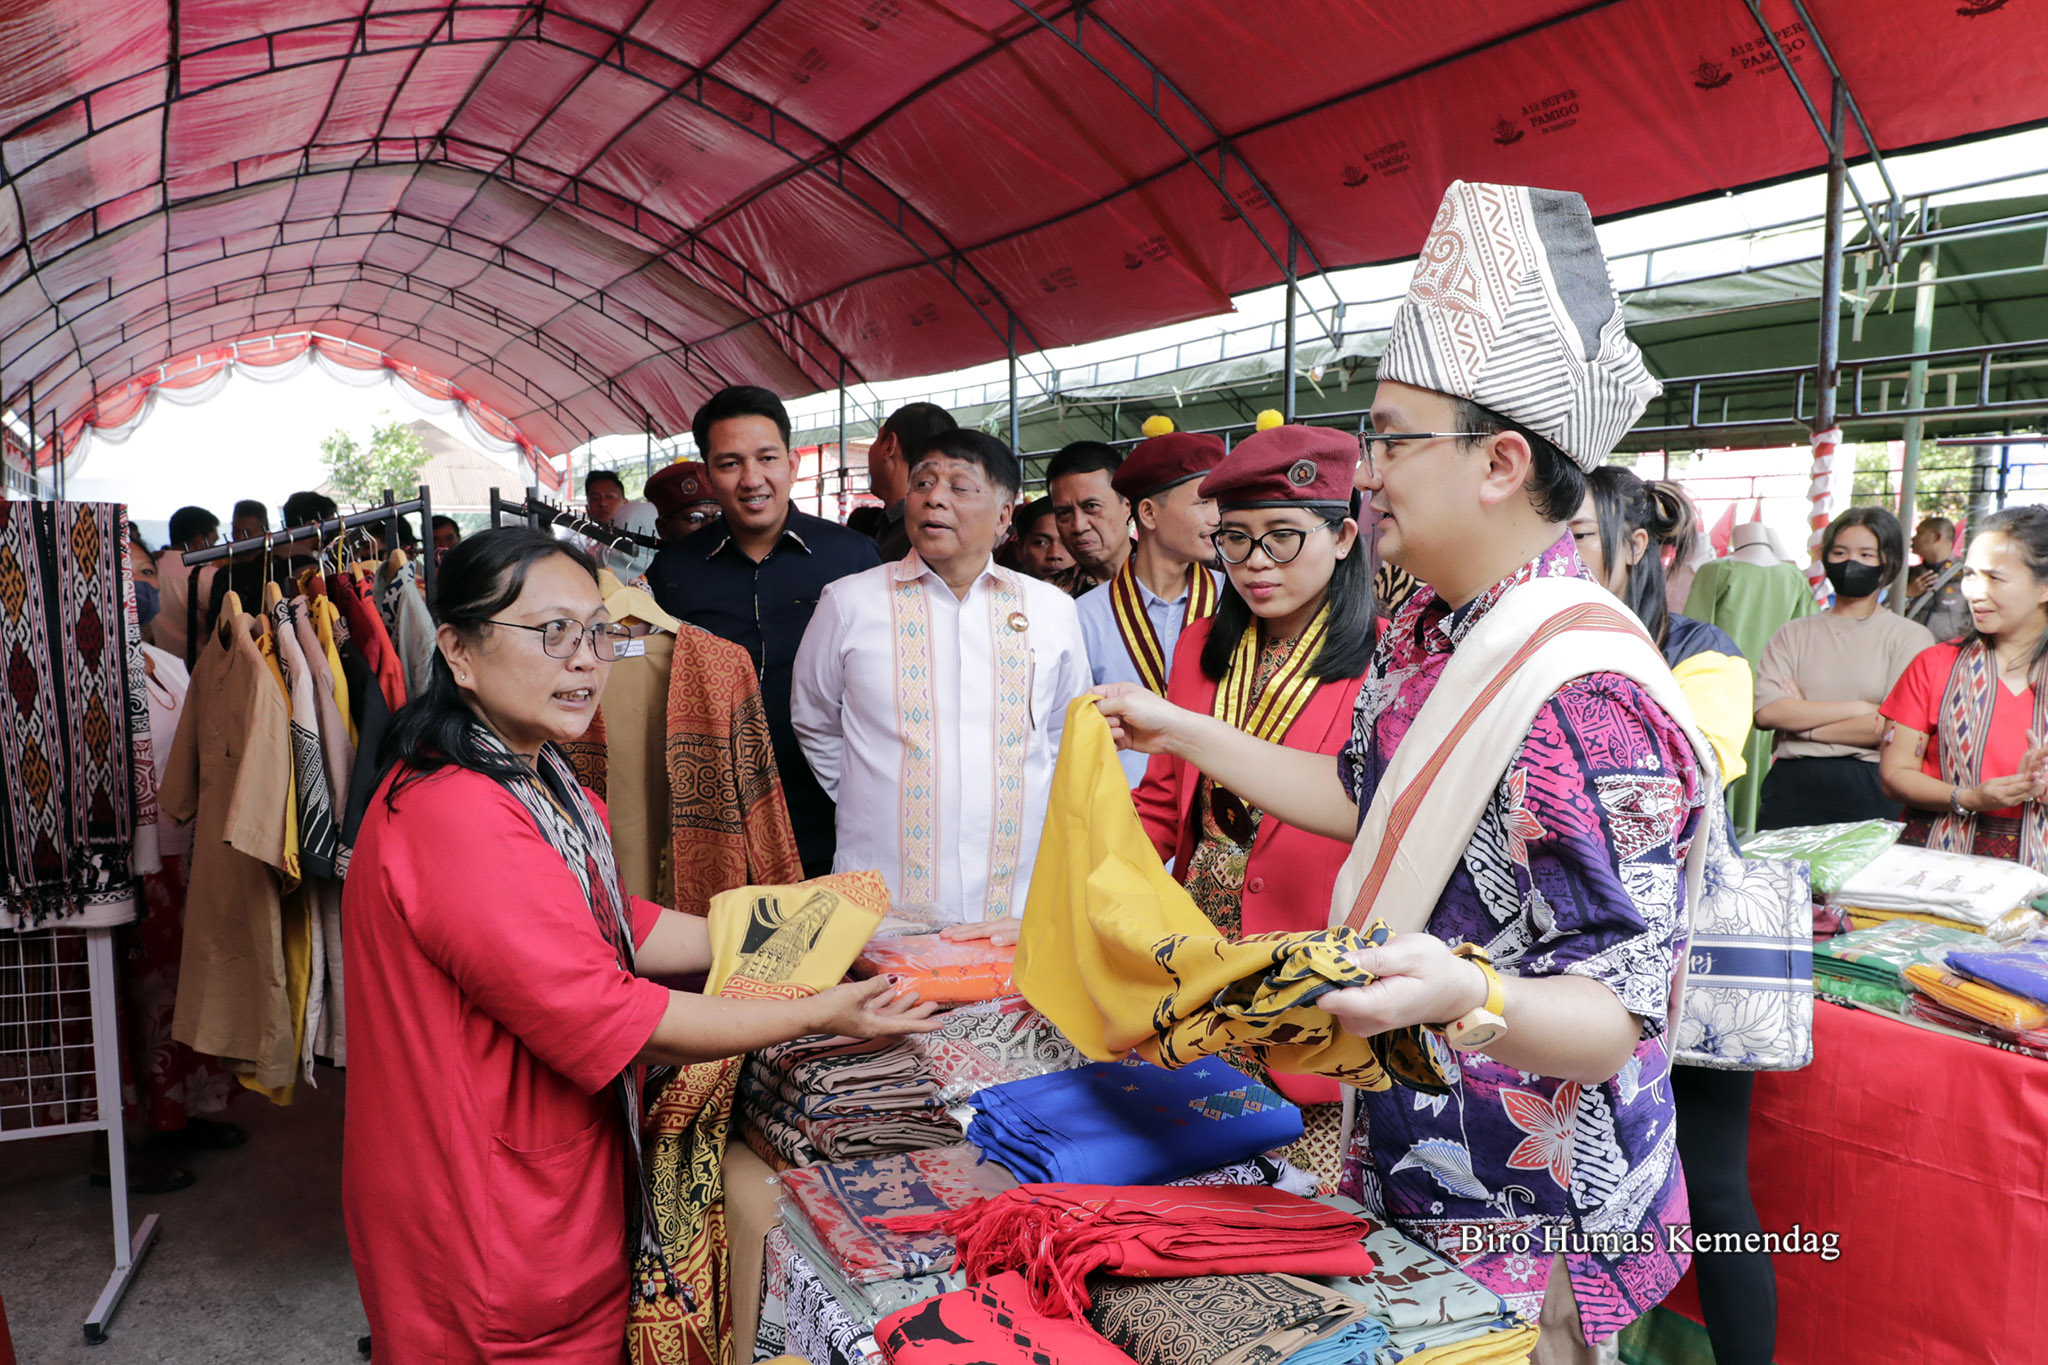 Pada kesempatan tersebut, Wamendag juga meninjau pameran produk lokal UMKM Tana Toraja yang digelar pada acara tersebut.